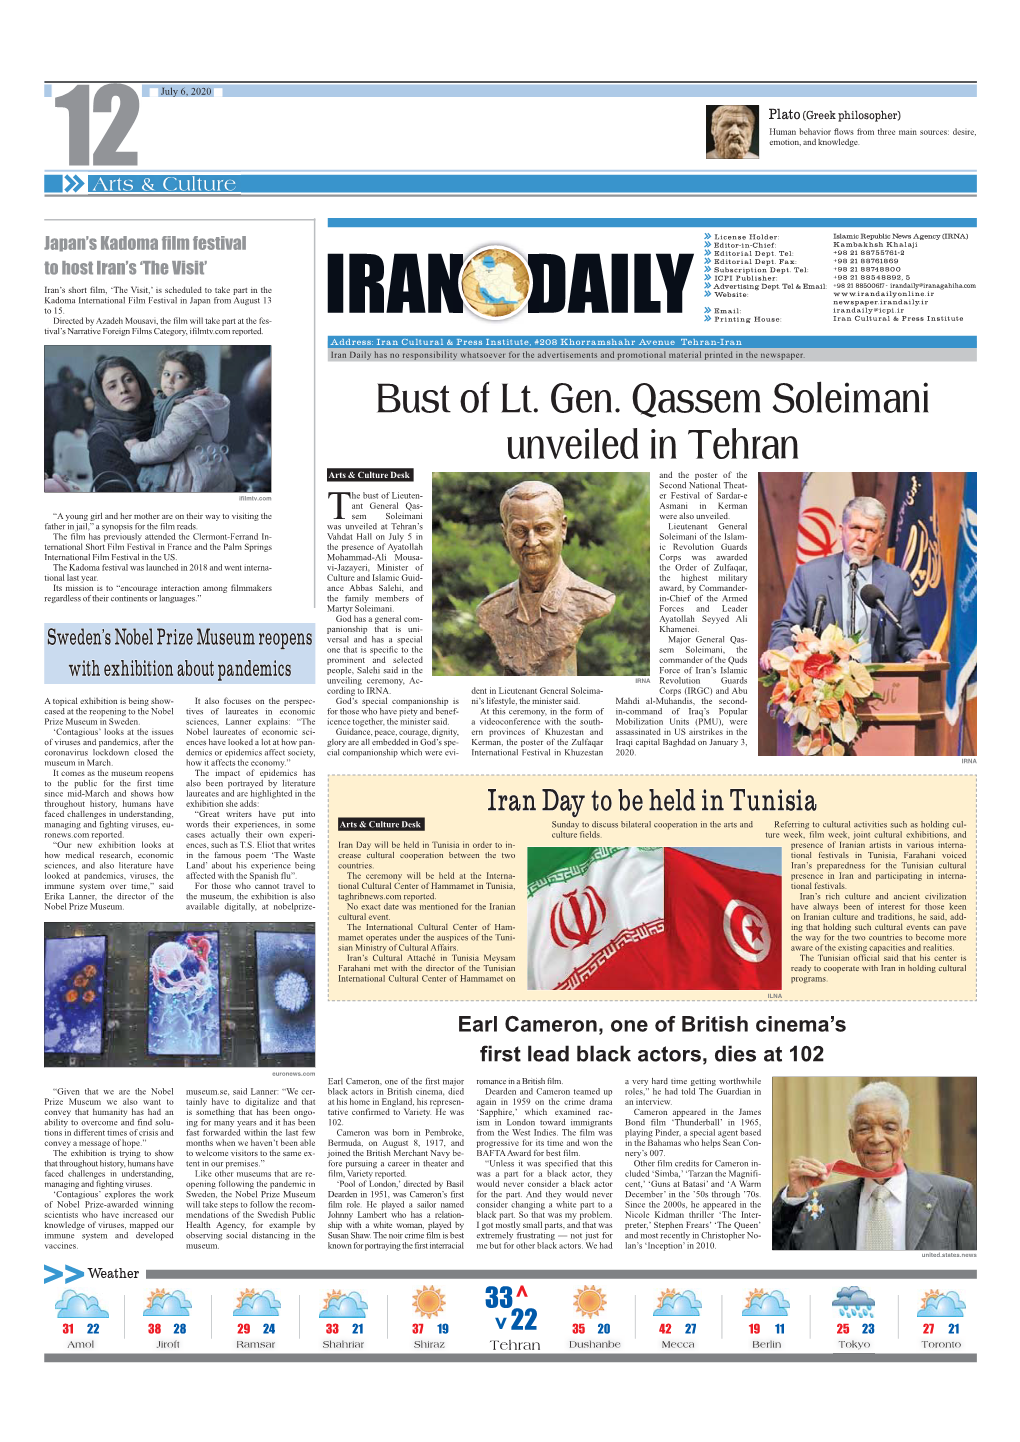 Bust of Lt. Gen. Qassem Soleimani Unveiled in Tehran